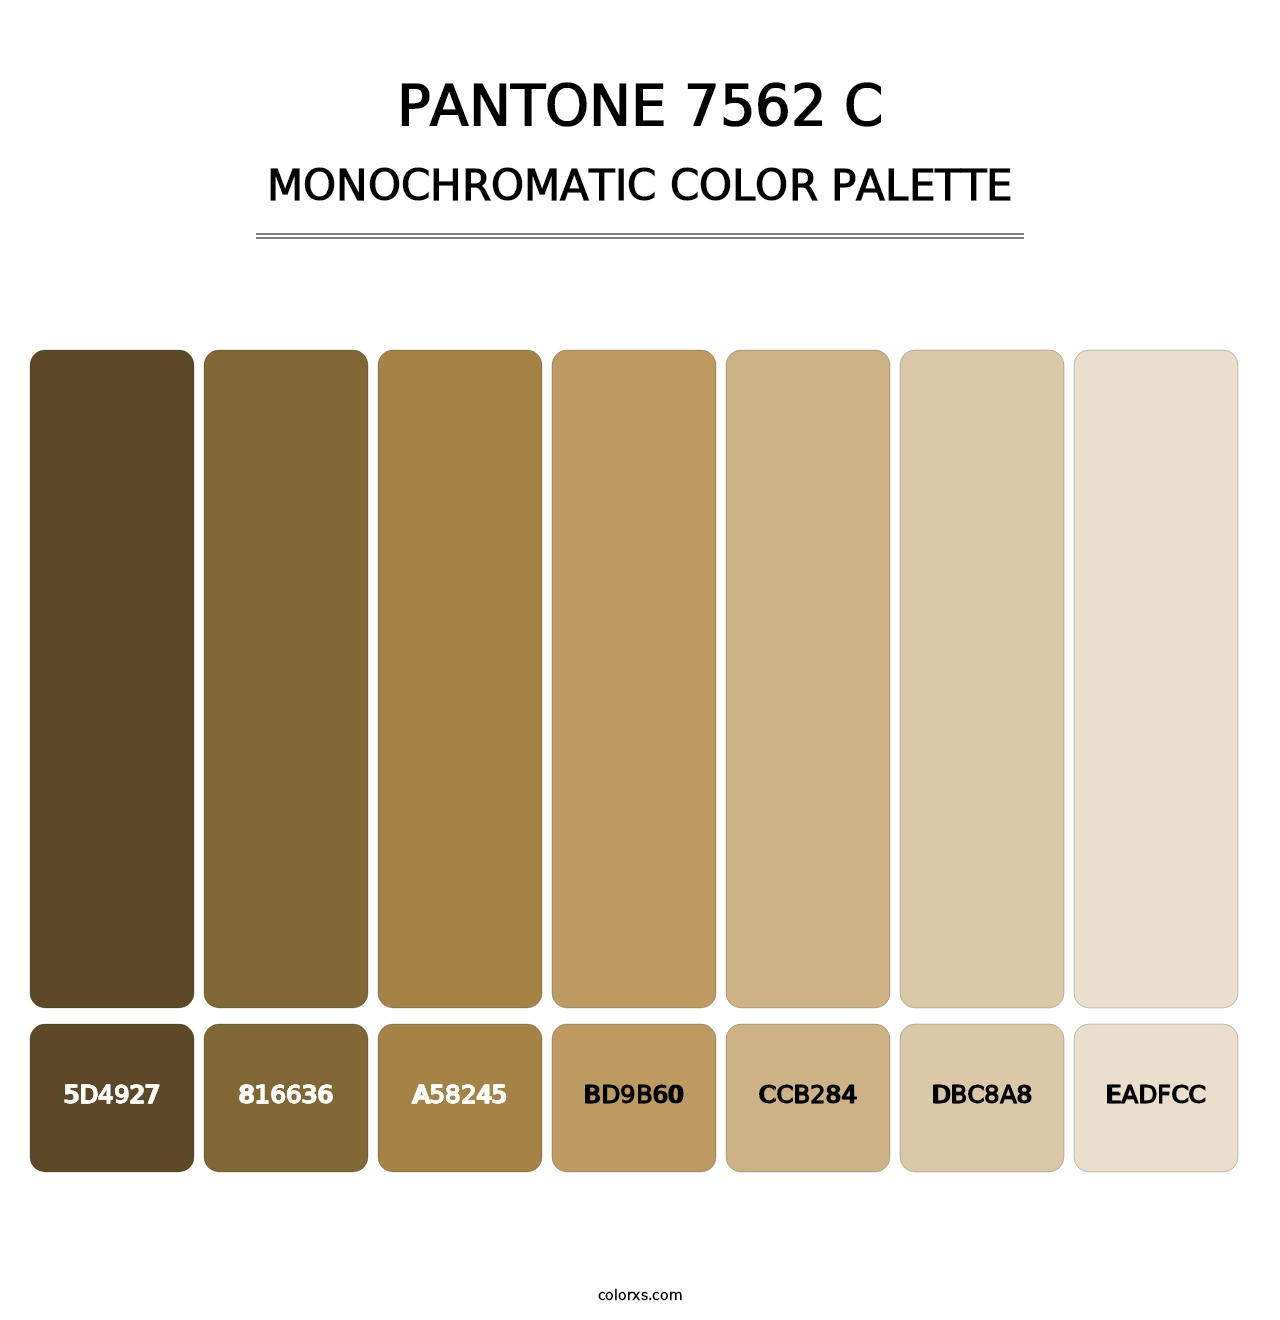 PANTONE 7562 C - Monochromatic Color Palette